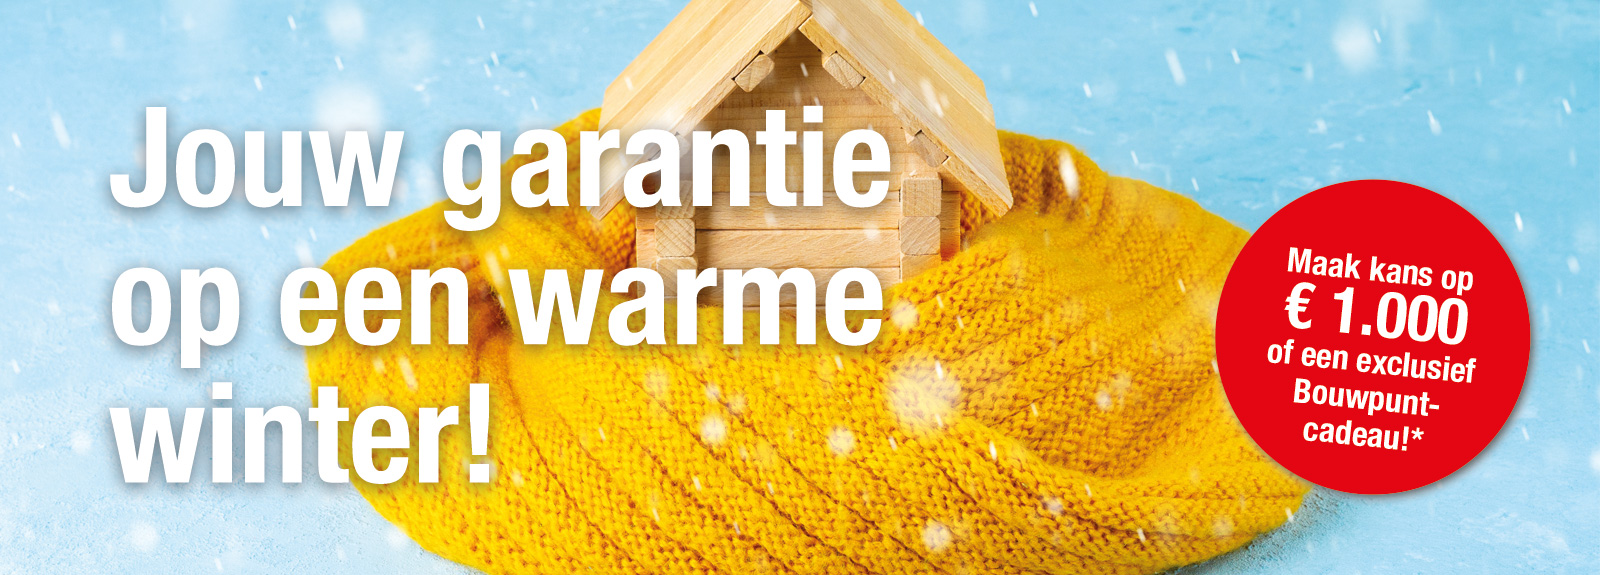 Jouw garantie op een warme winter!